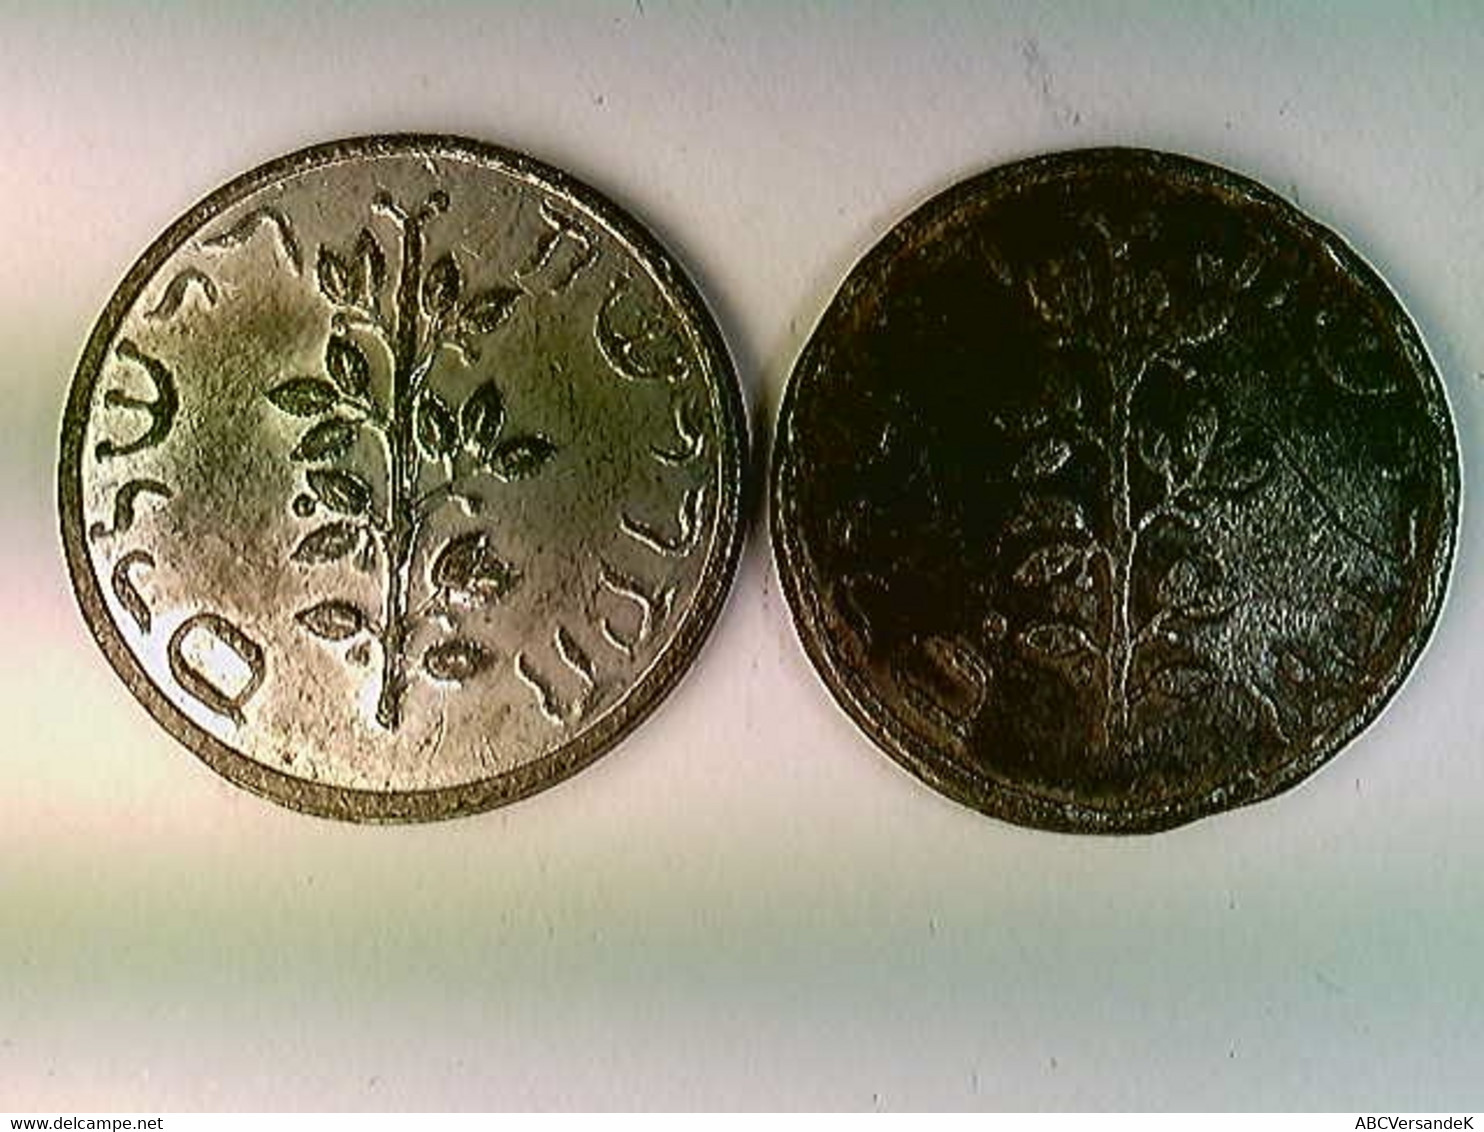 Münzen, 2x Görlitzer Schekel, 19. Jahrh., Judaika, Amphore, Weihrauch, Olivenzweig, Konvolut - Numismatik